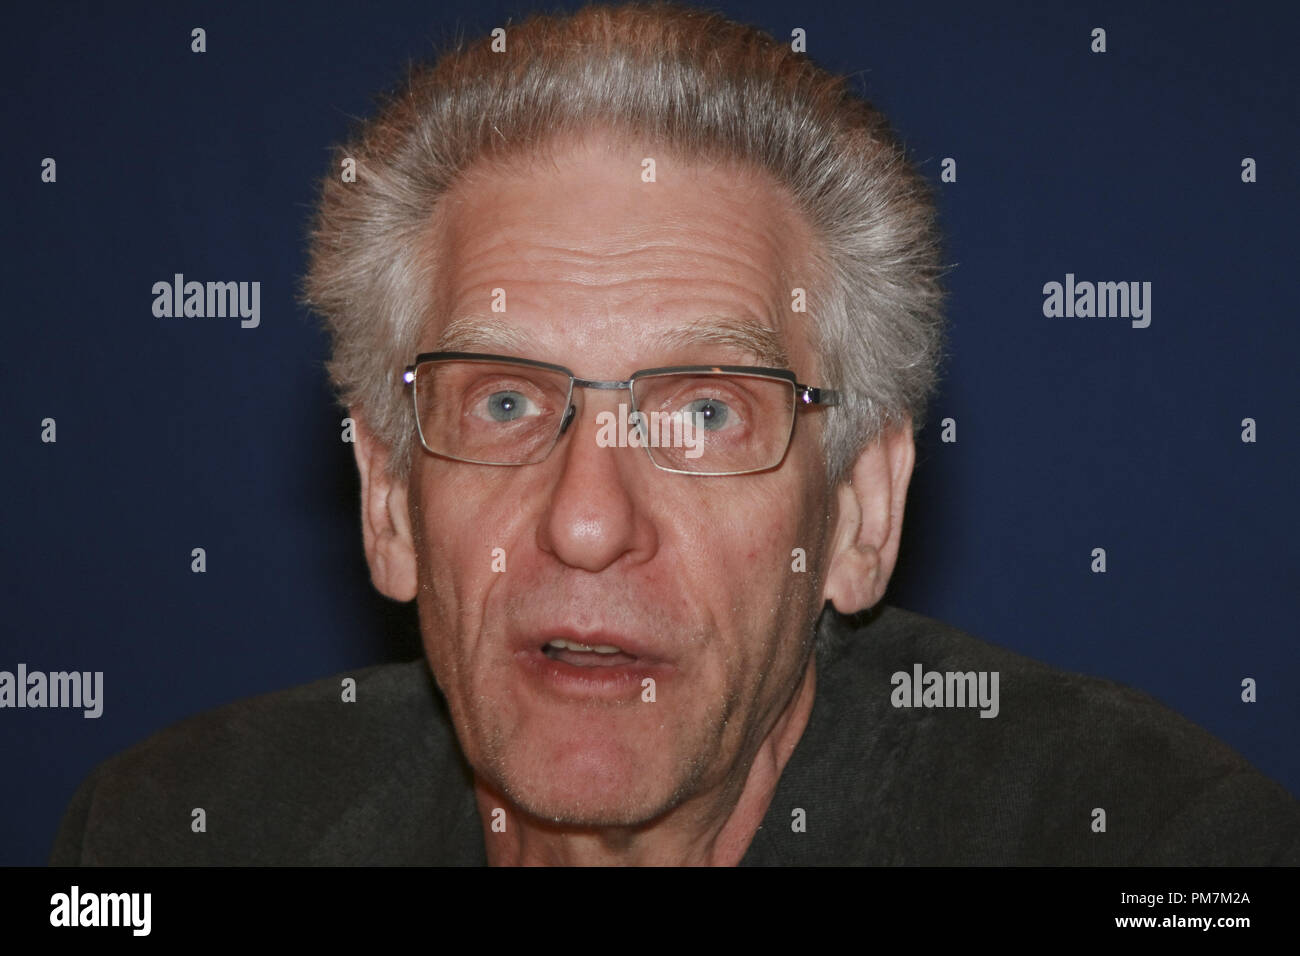 David Cronenberg "une méthode dangereuse" Session de portrait, le 11 septembre 2011. La reproduction par les tabloïds américains est absolument interdit. Référence #  31173 Fichier 045CCR pour un usage éditorial uniquement - Tous droits réservés Banque D'Images